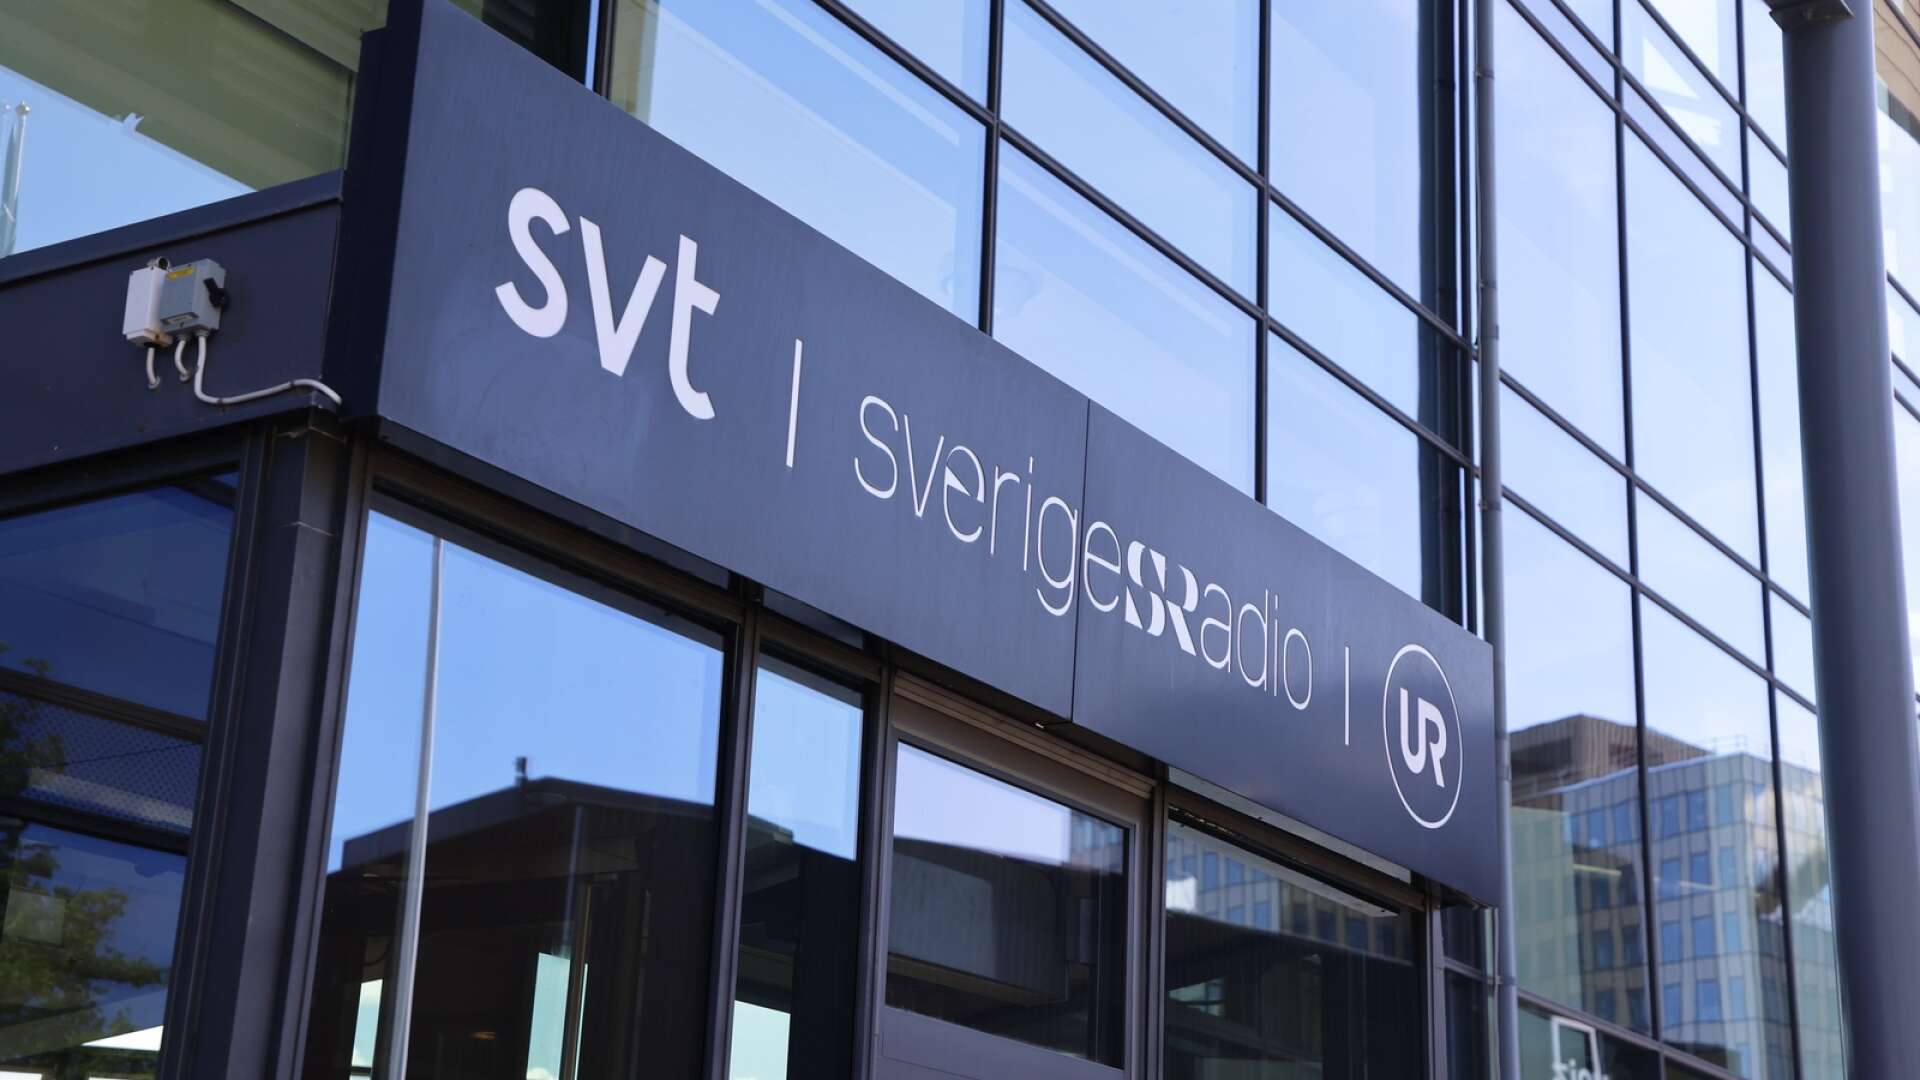 Kanalhuset i Göteborg som huserar Sveriges television och Sveriges radio.